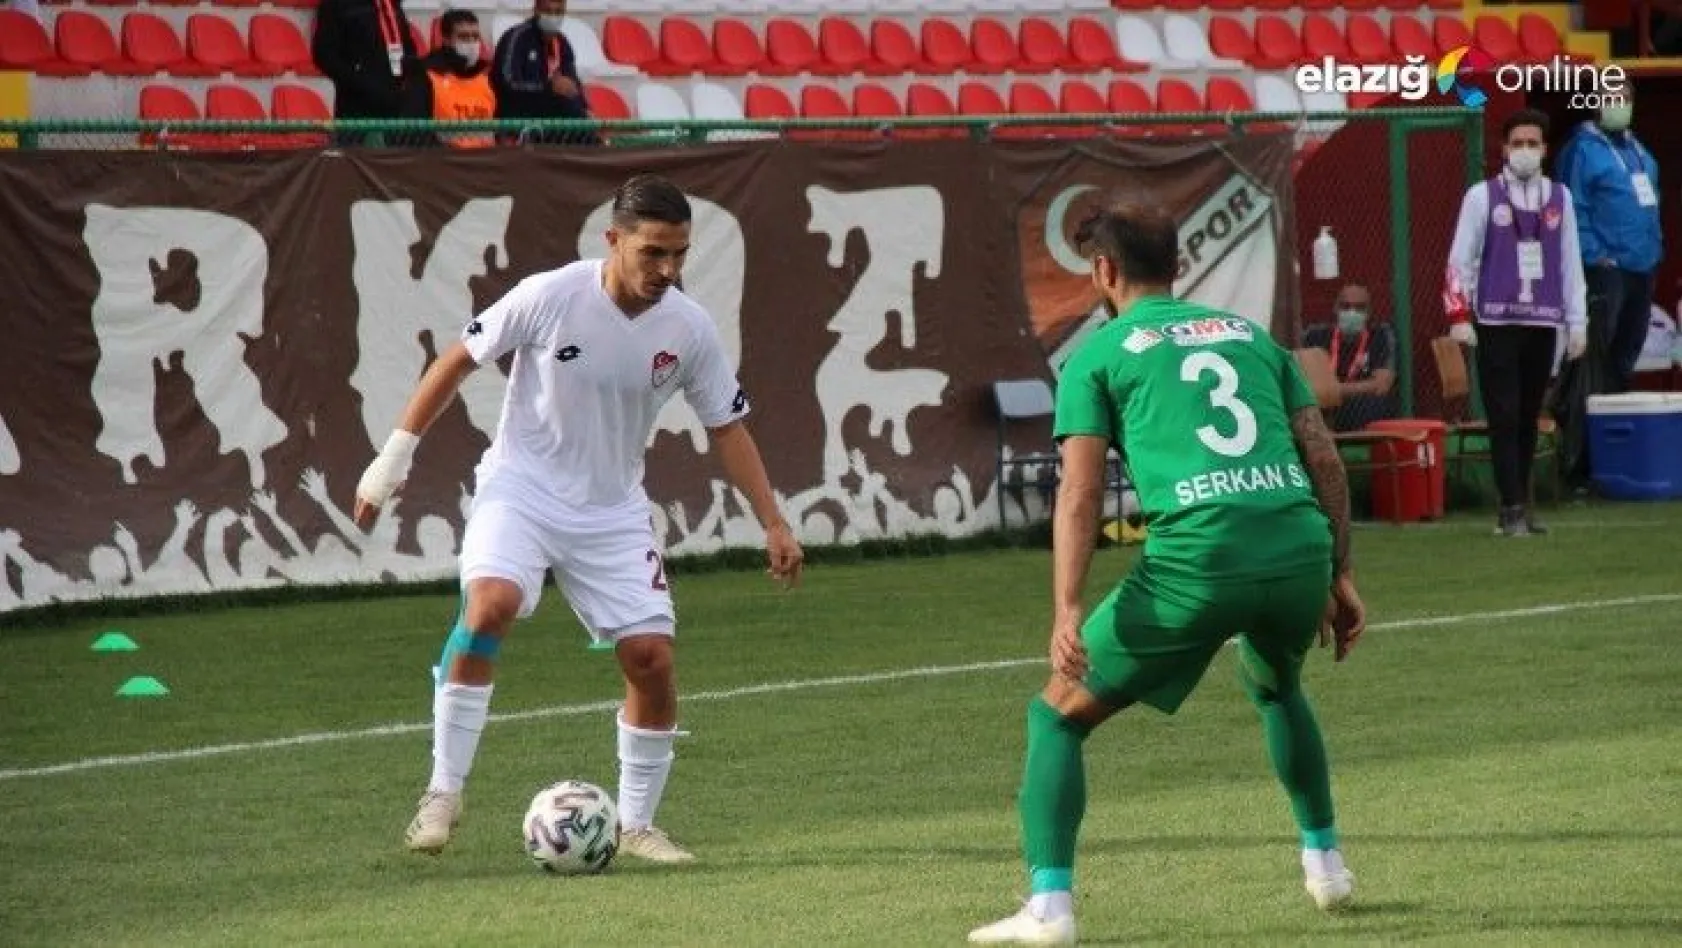 Elazığspor, sahasında karşılaştığı Kırklarelispor'a mağlup oldu